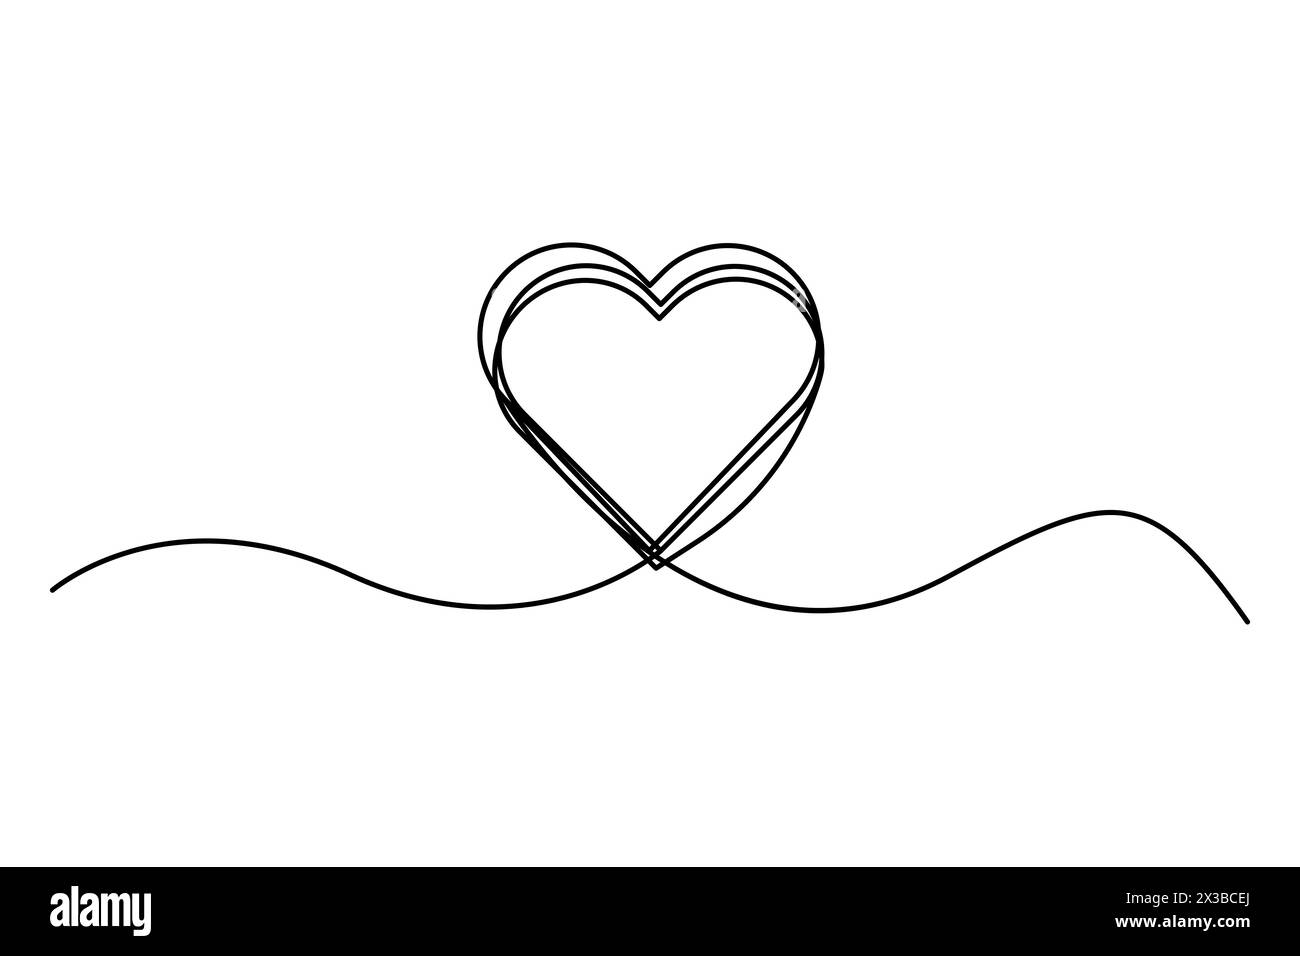 Motif coeur en ligne continue. Symbole d'amour minimaliste. Dessin au trait. Illustration vectorielle. SPE 10. Illustration de Vecteur